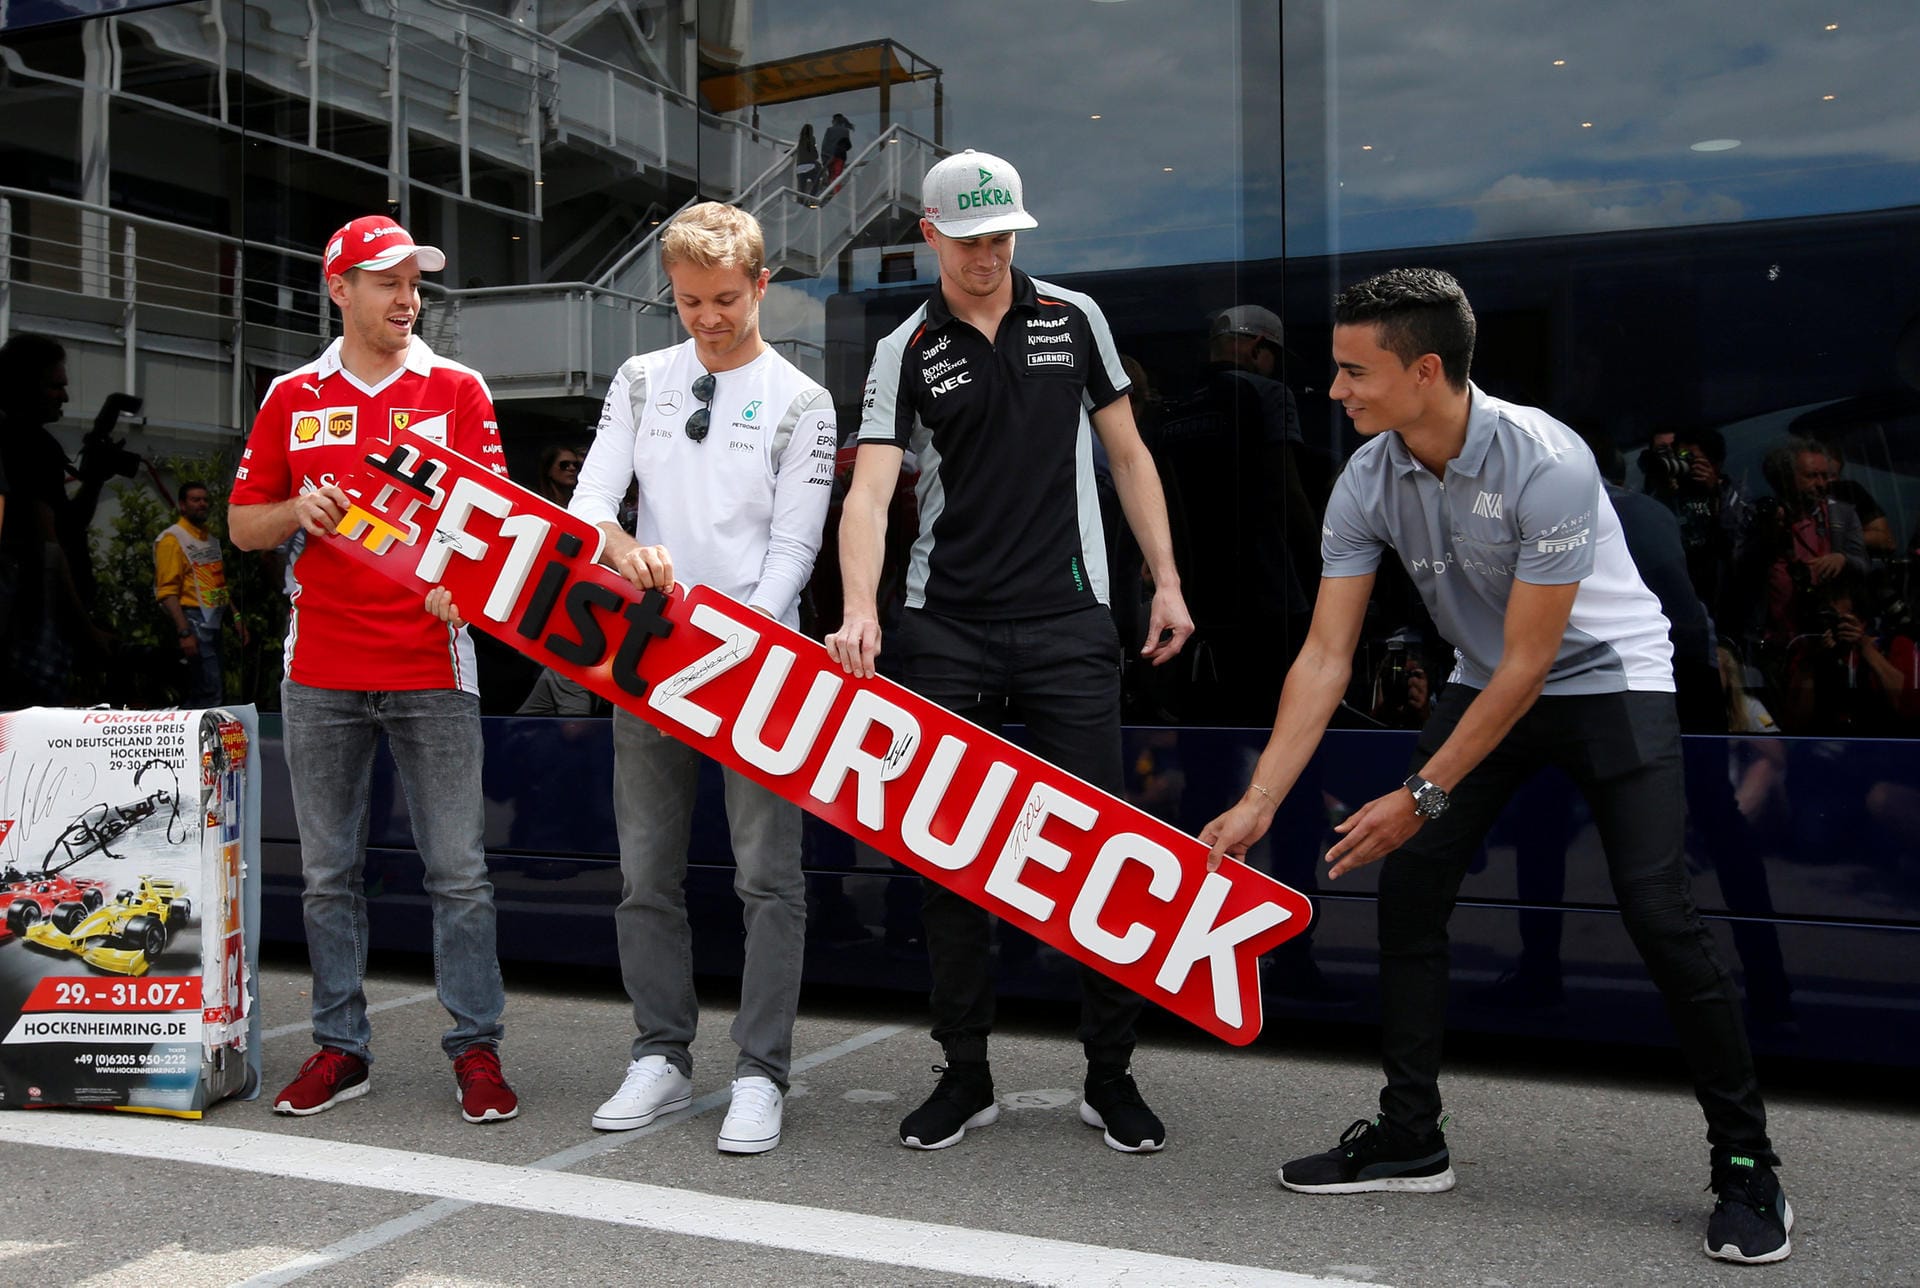 Posieren für die Fotografen: Die vier deutschen Piloten Sebastian Vettel, Nico Rosberg, Nico Hülkenberg und Pascal Wehrlein.